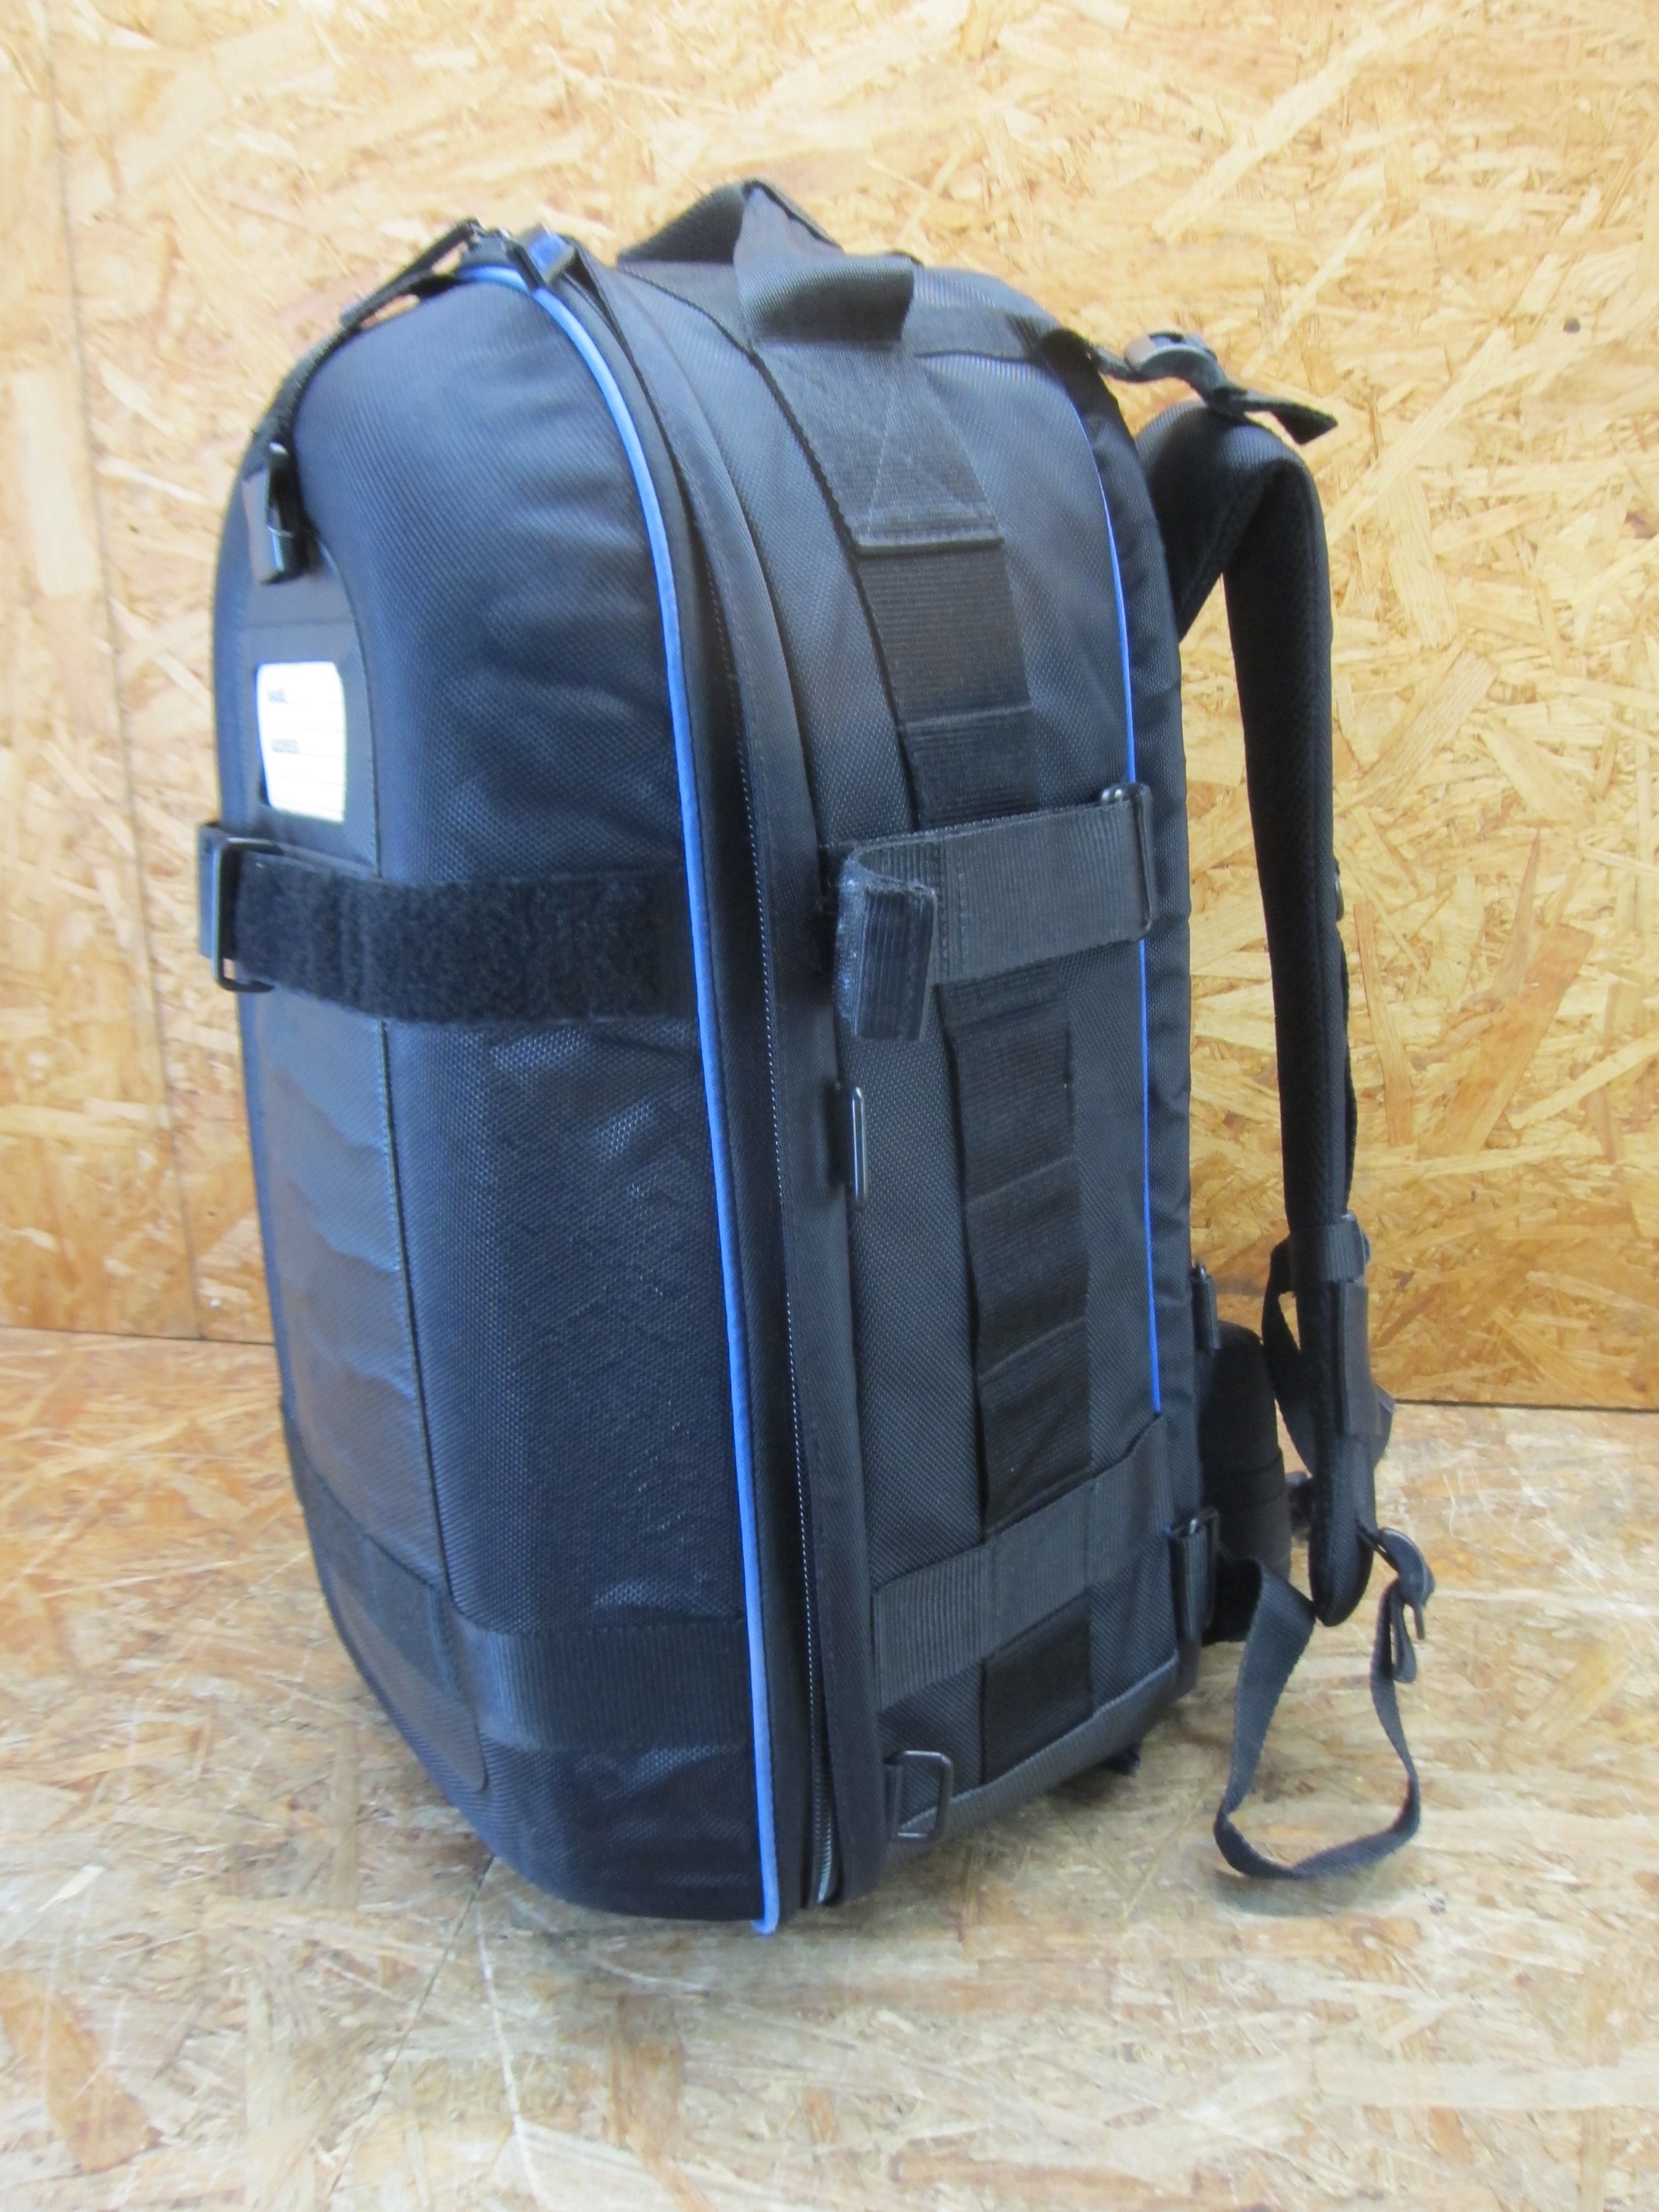 *SONY LCS-BP1BP рюкзак type портативный модель cam ko-da- для soft переносная сумка камера сумка *H371